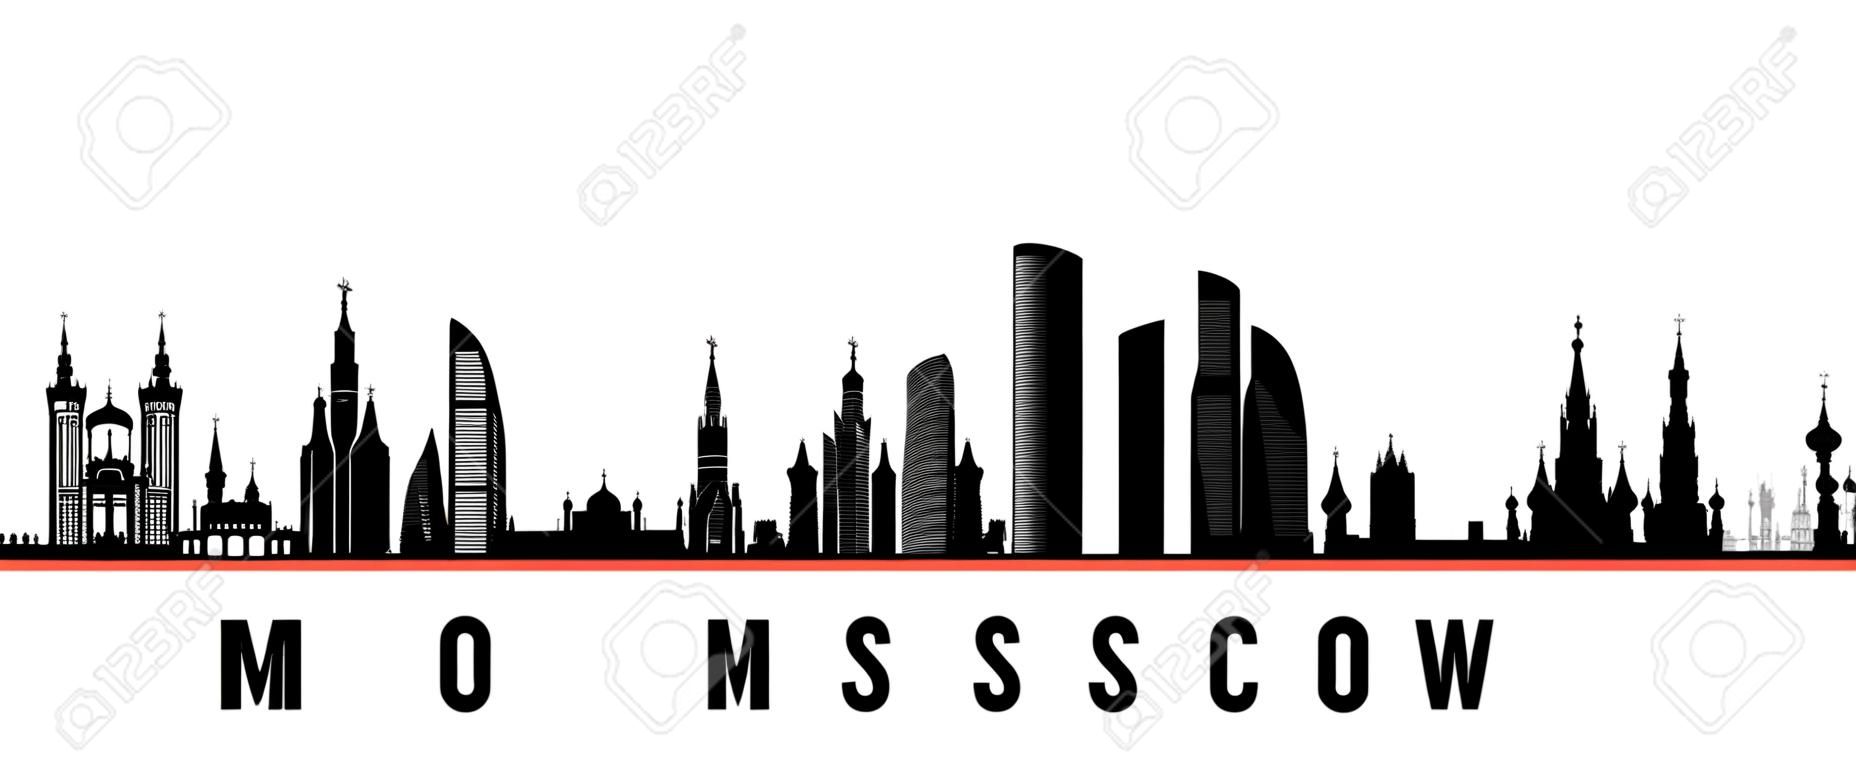 Insegna orizzontale dell'orizzonte della città di Mosca. Siluetta in bianco e nero della città di Mosca, Russia. Modello vettoriale per il tuo design.